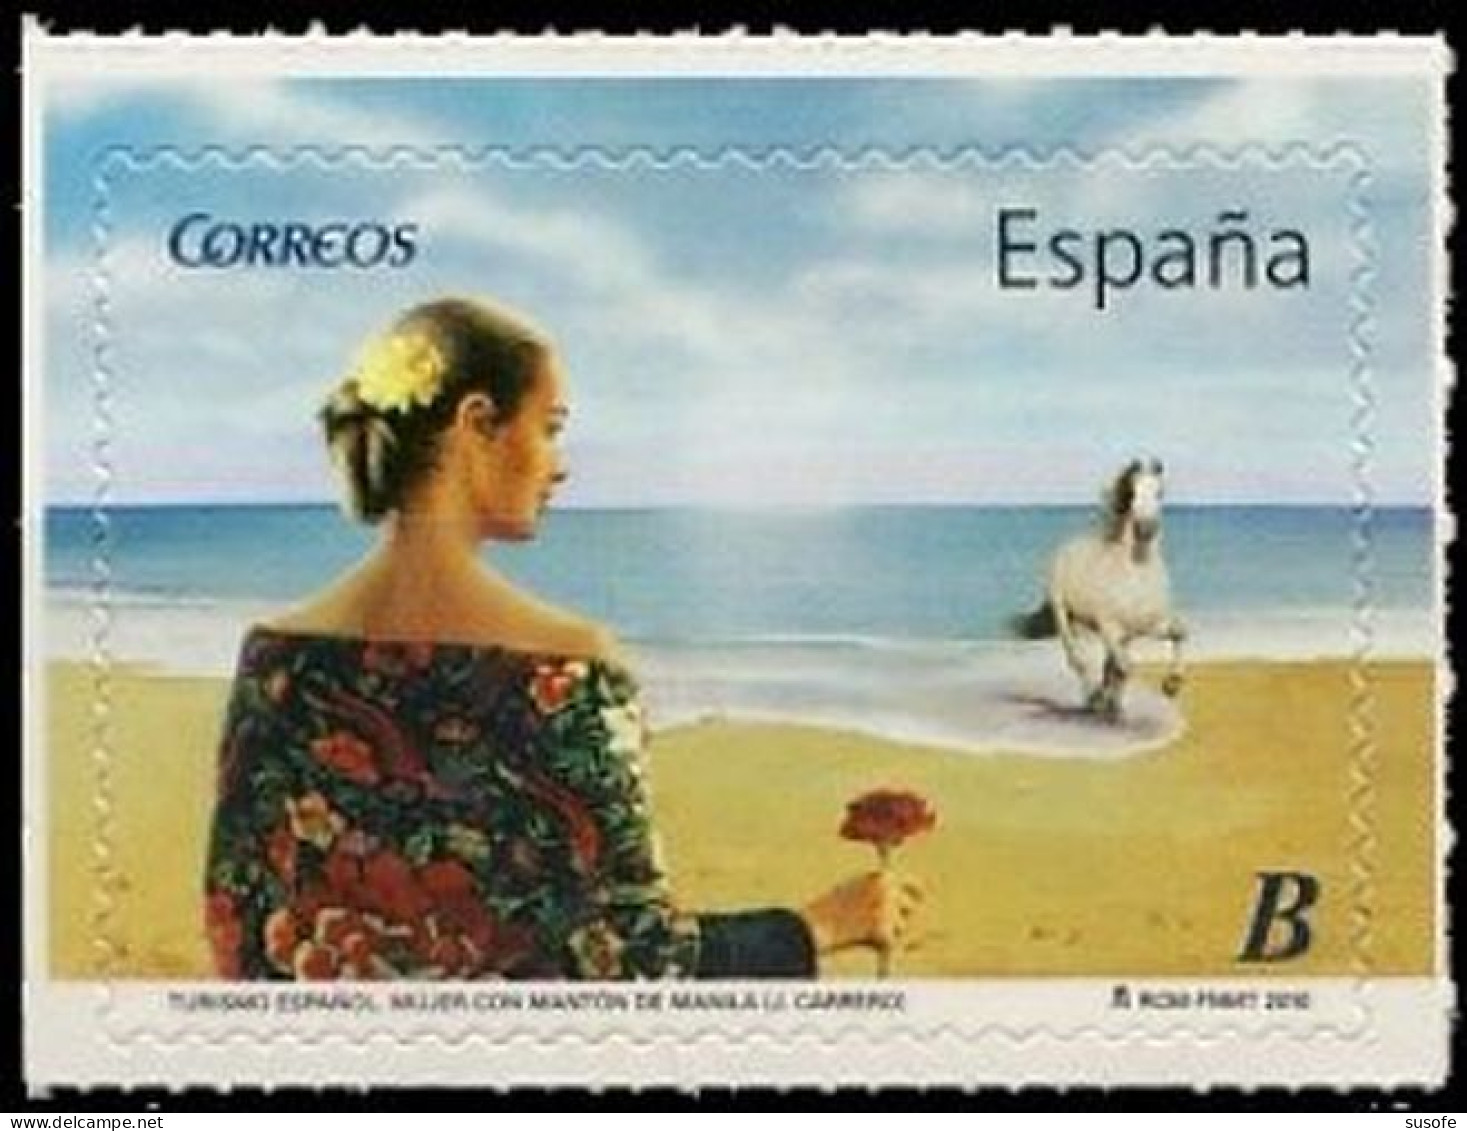 España 2010 Edifil 4532 Sello ** Turismo Mujer Con Mantón De Manila  (J. Carrero) Spain Stamps Timbre Espagne Briefmarke - Nuovi